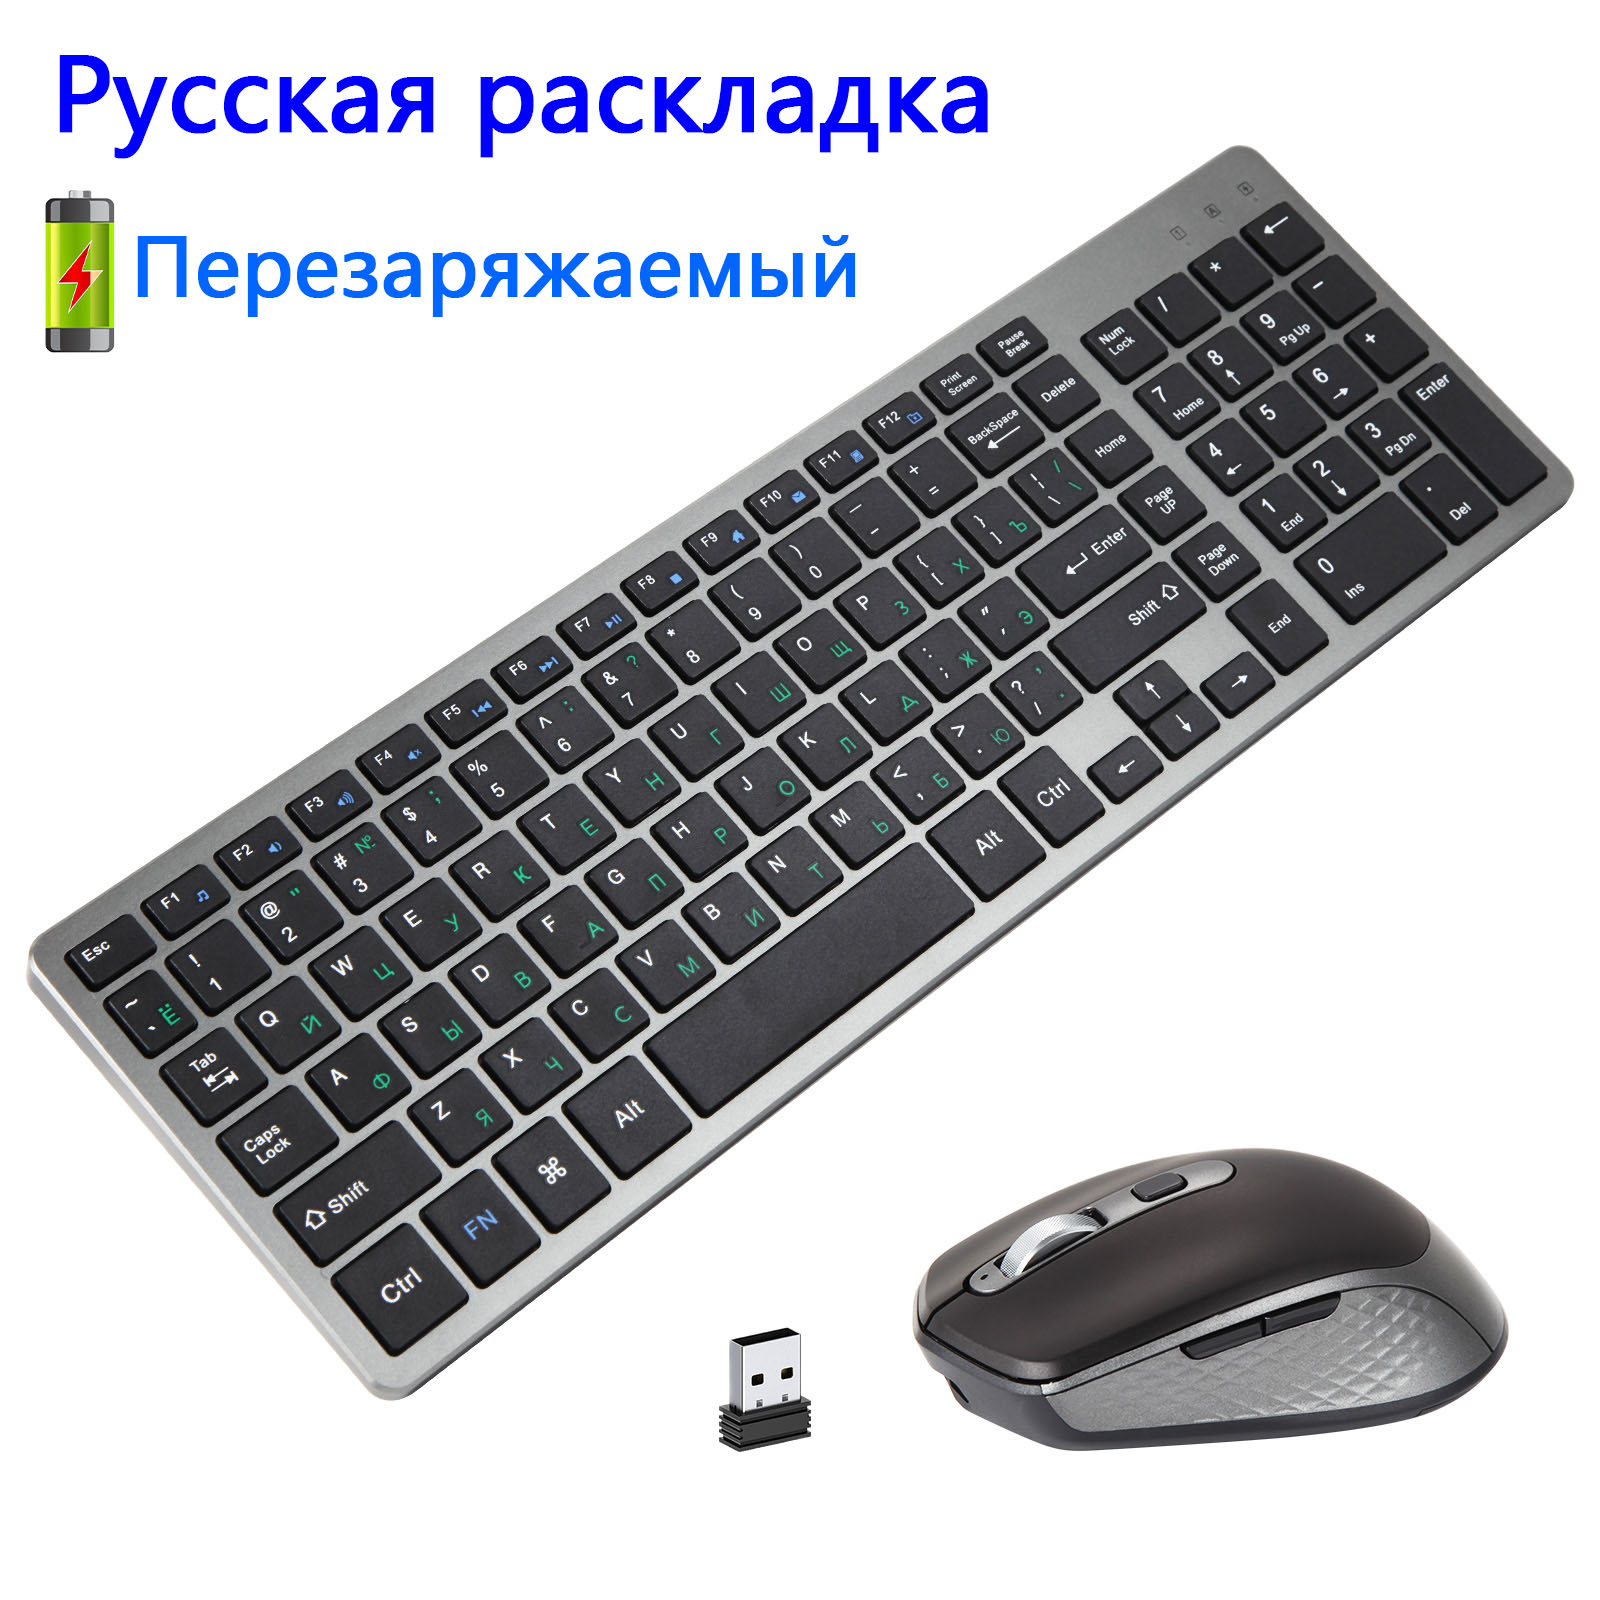 Oplaadbare Russische Toetsenbord En Muis Combo Wireless Slim Stille Toetsenbord Muis Set Met Zijknoppen Voor Laptop Pc Computer